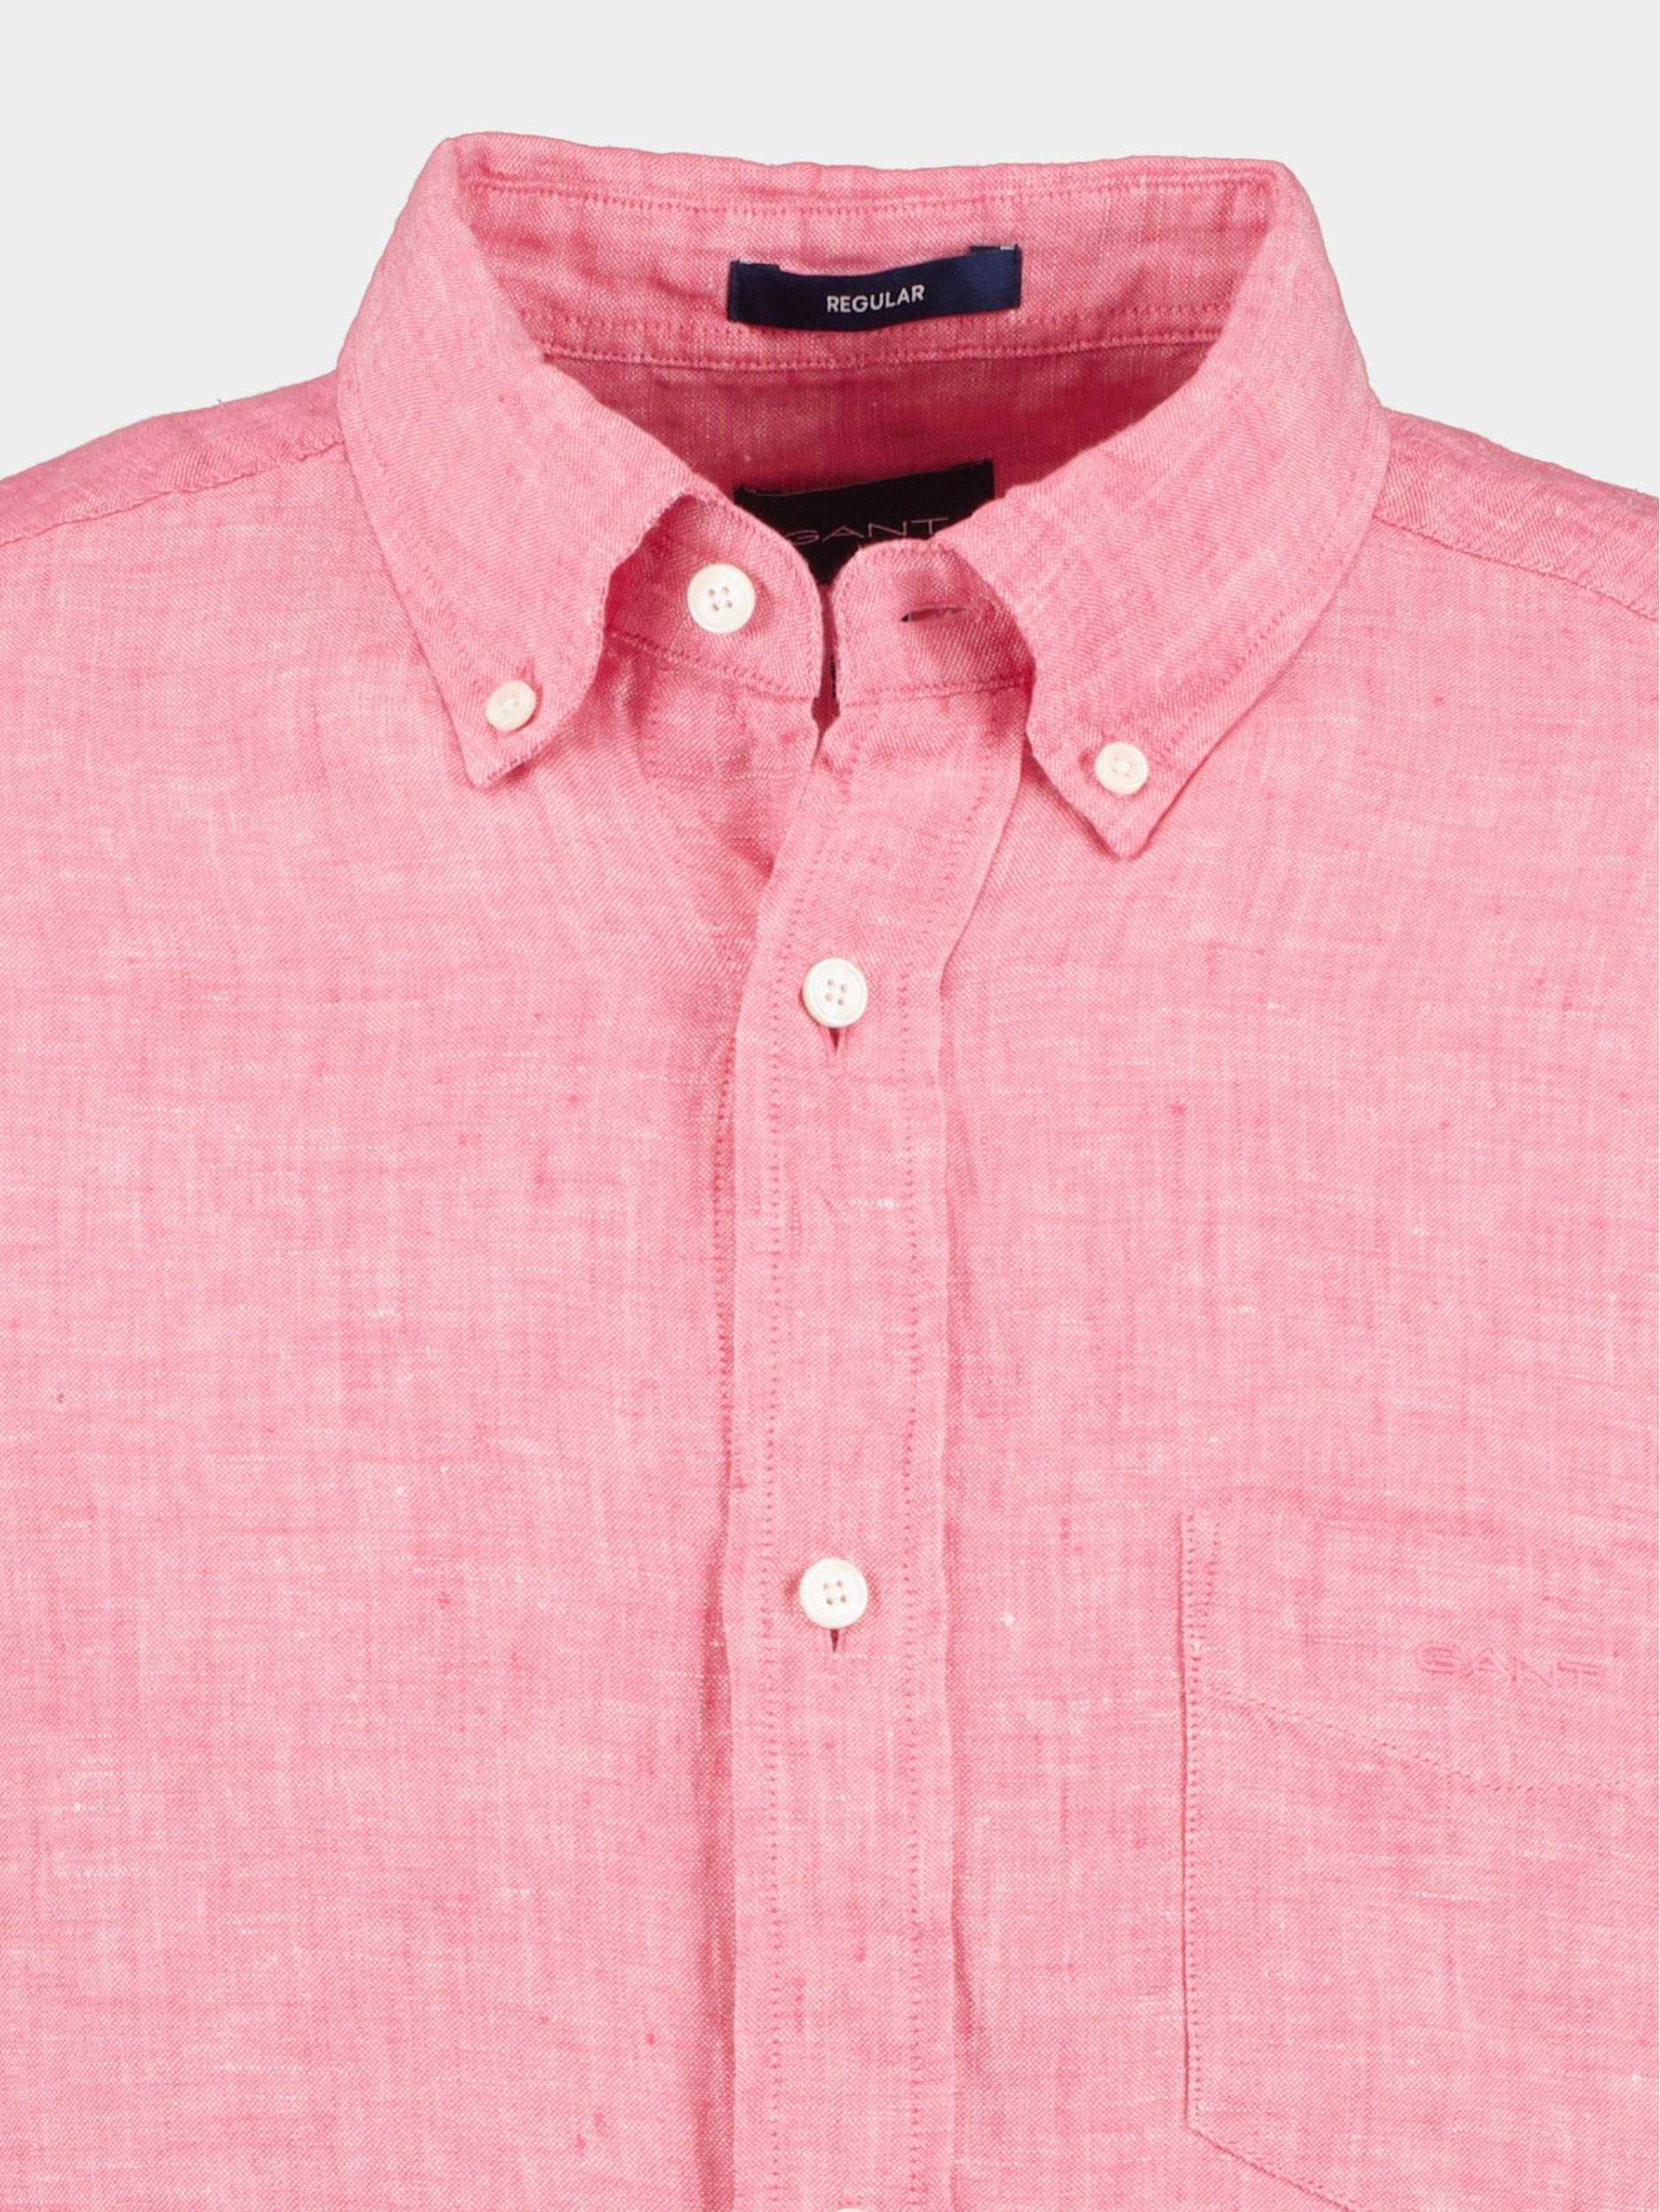 Gant Casual hemd lange mouw Roze Reg Linen Shirt 3230085/606